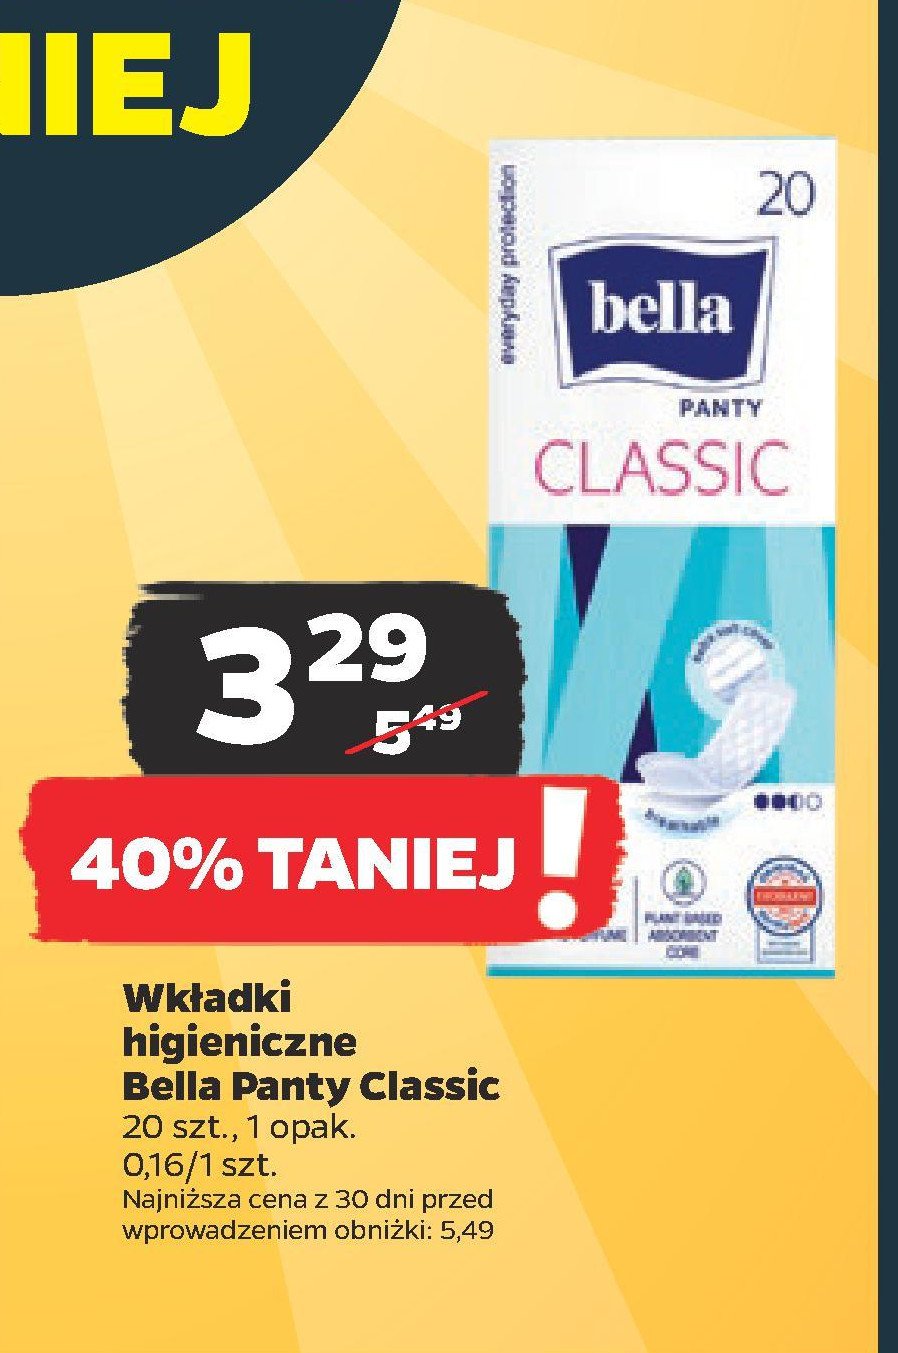 Wkładki higieniczne Bella panty classic promocja